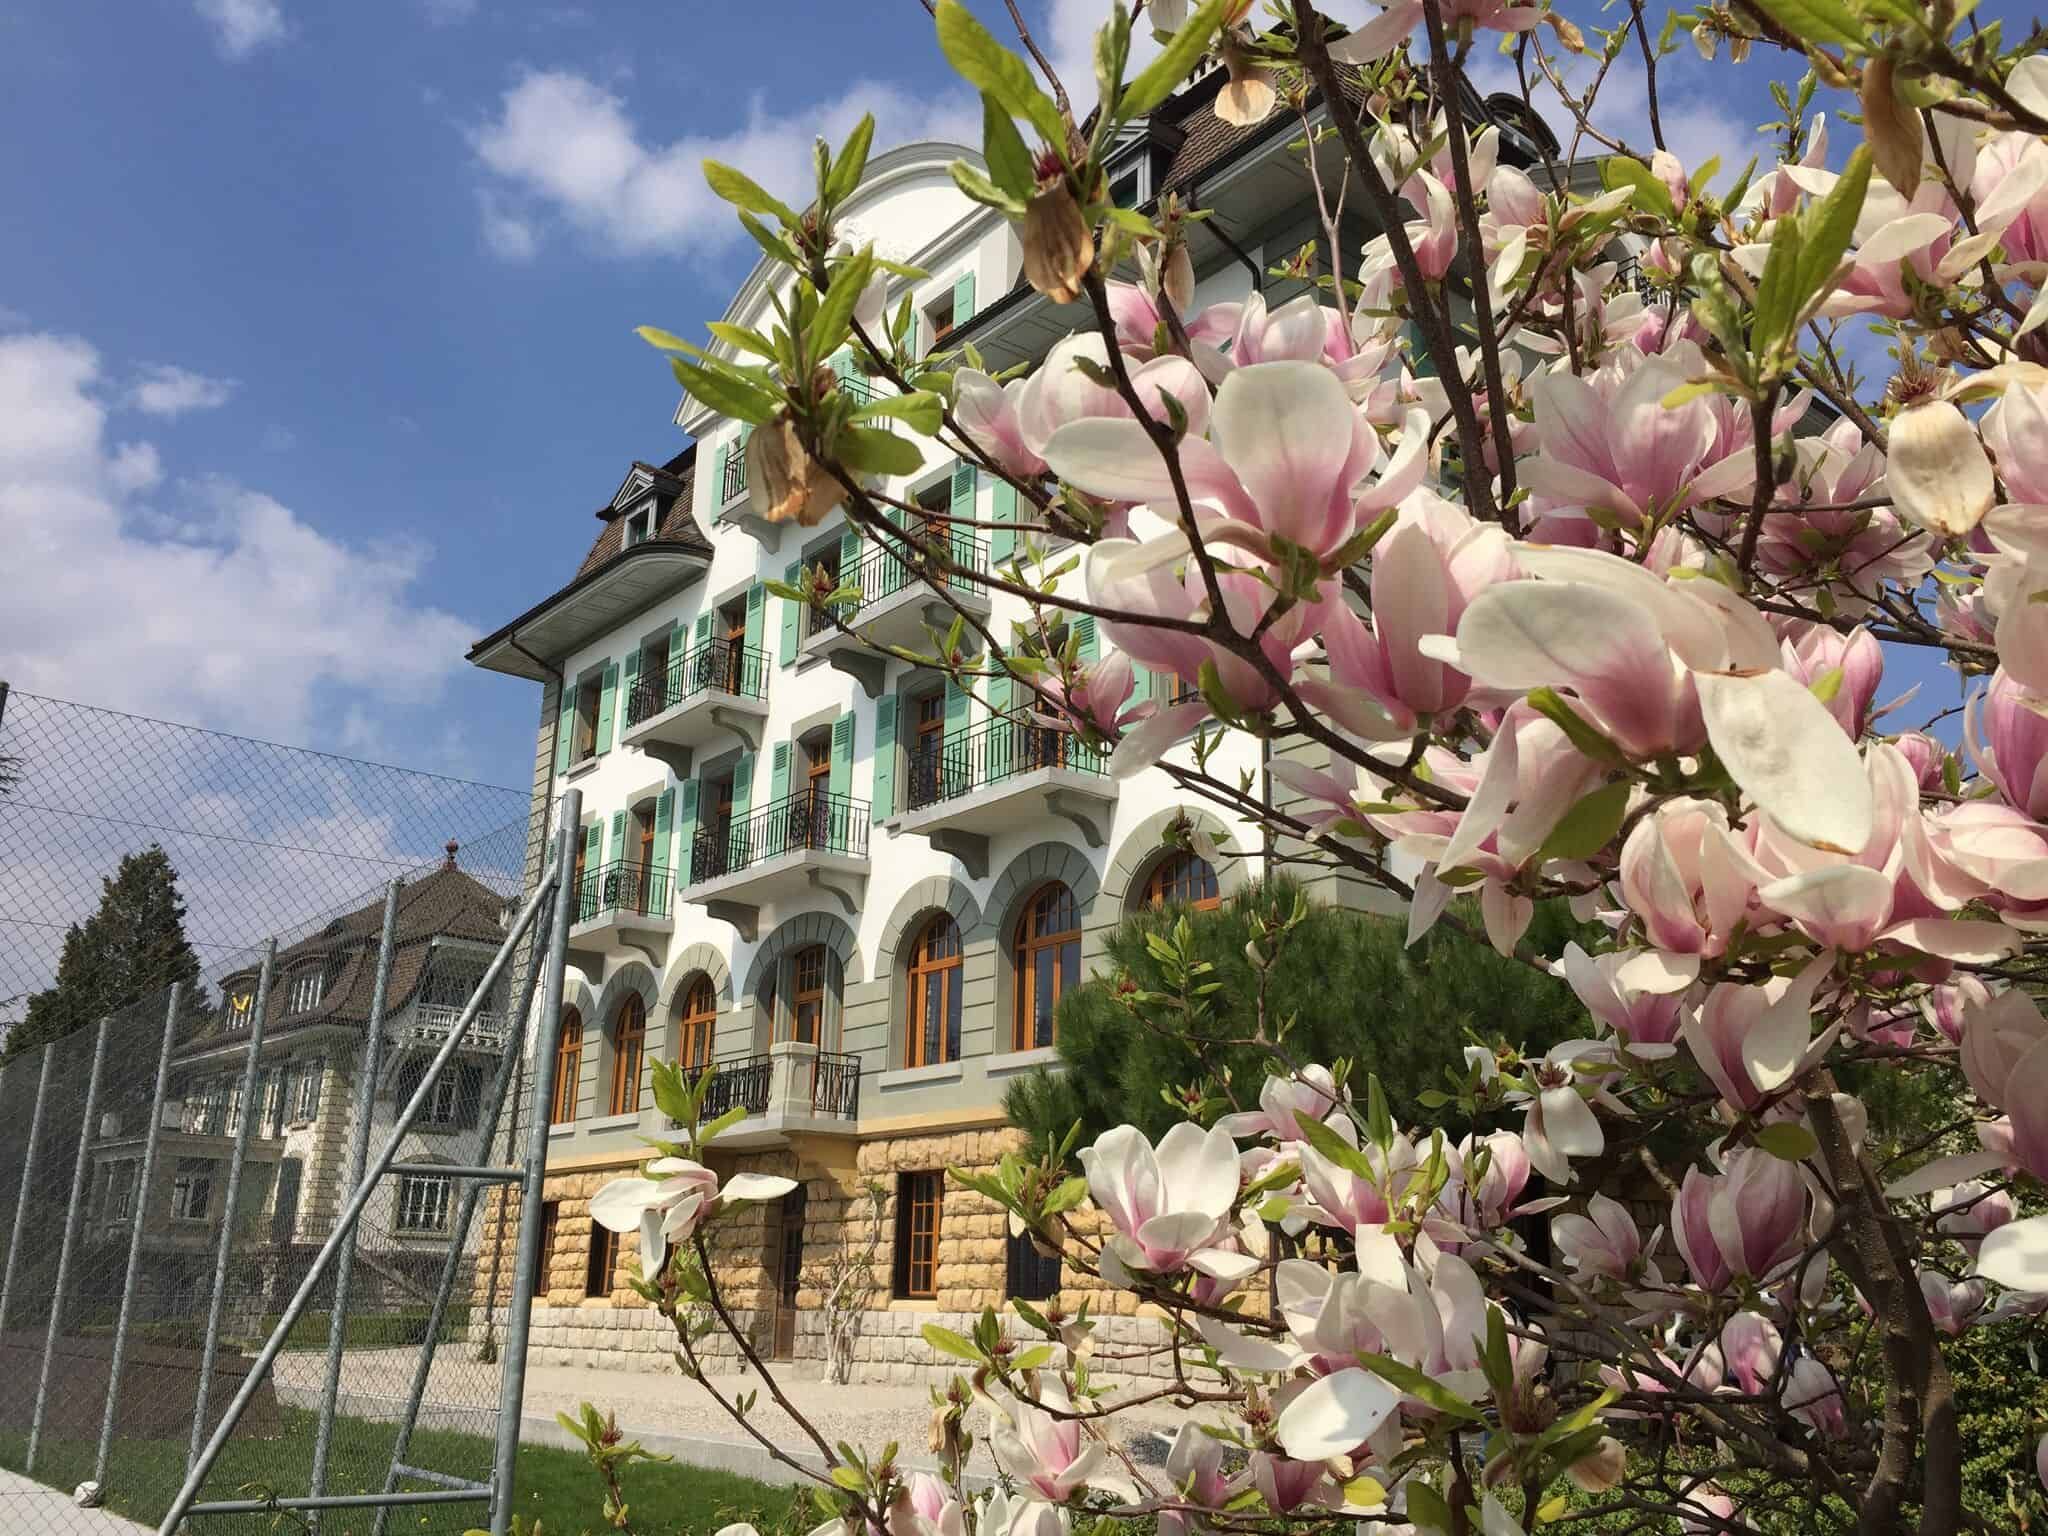  campus - Copie Brillantmont International School Lausanne, Switzerland celebrates its 135th anniversary.